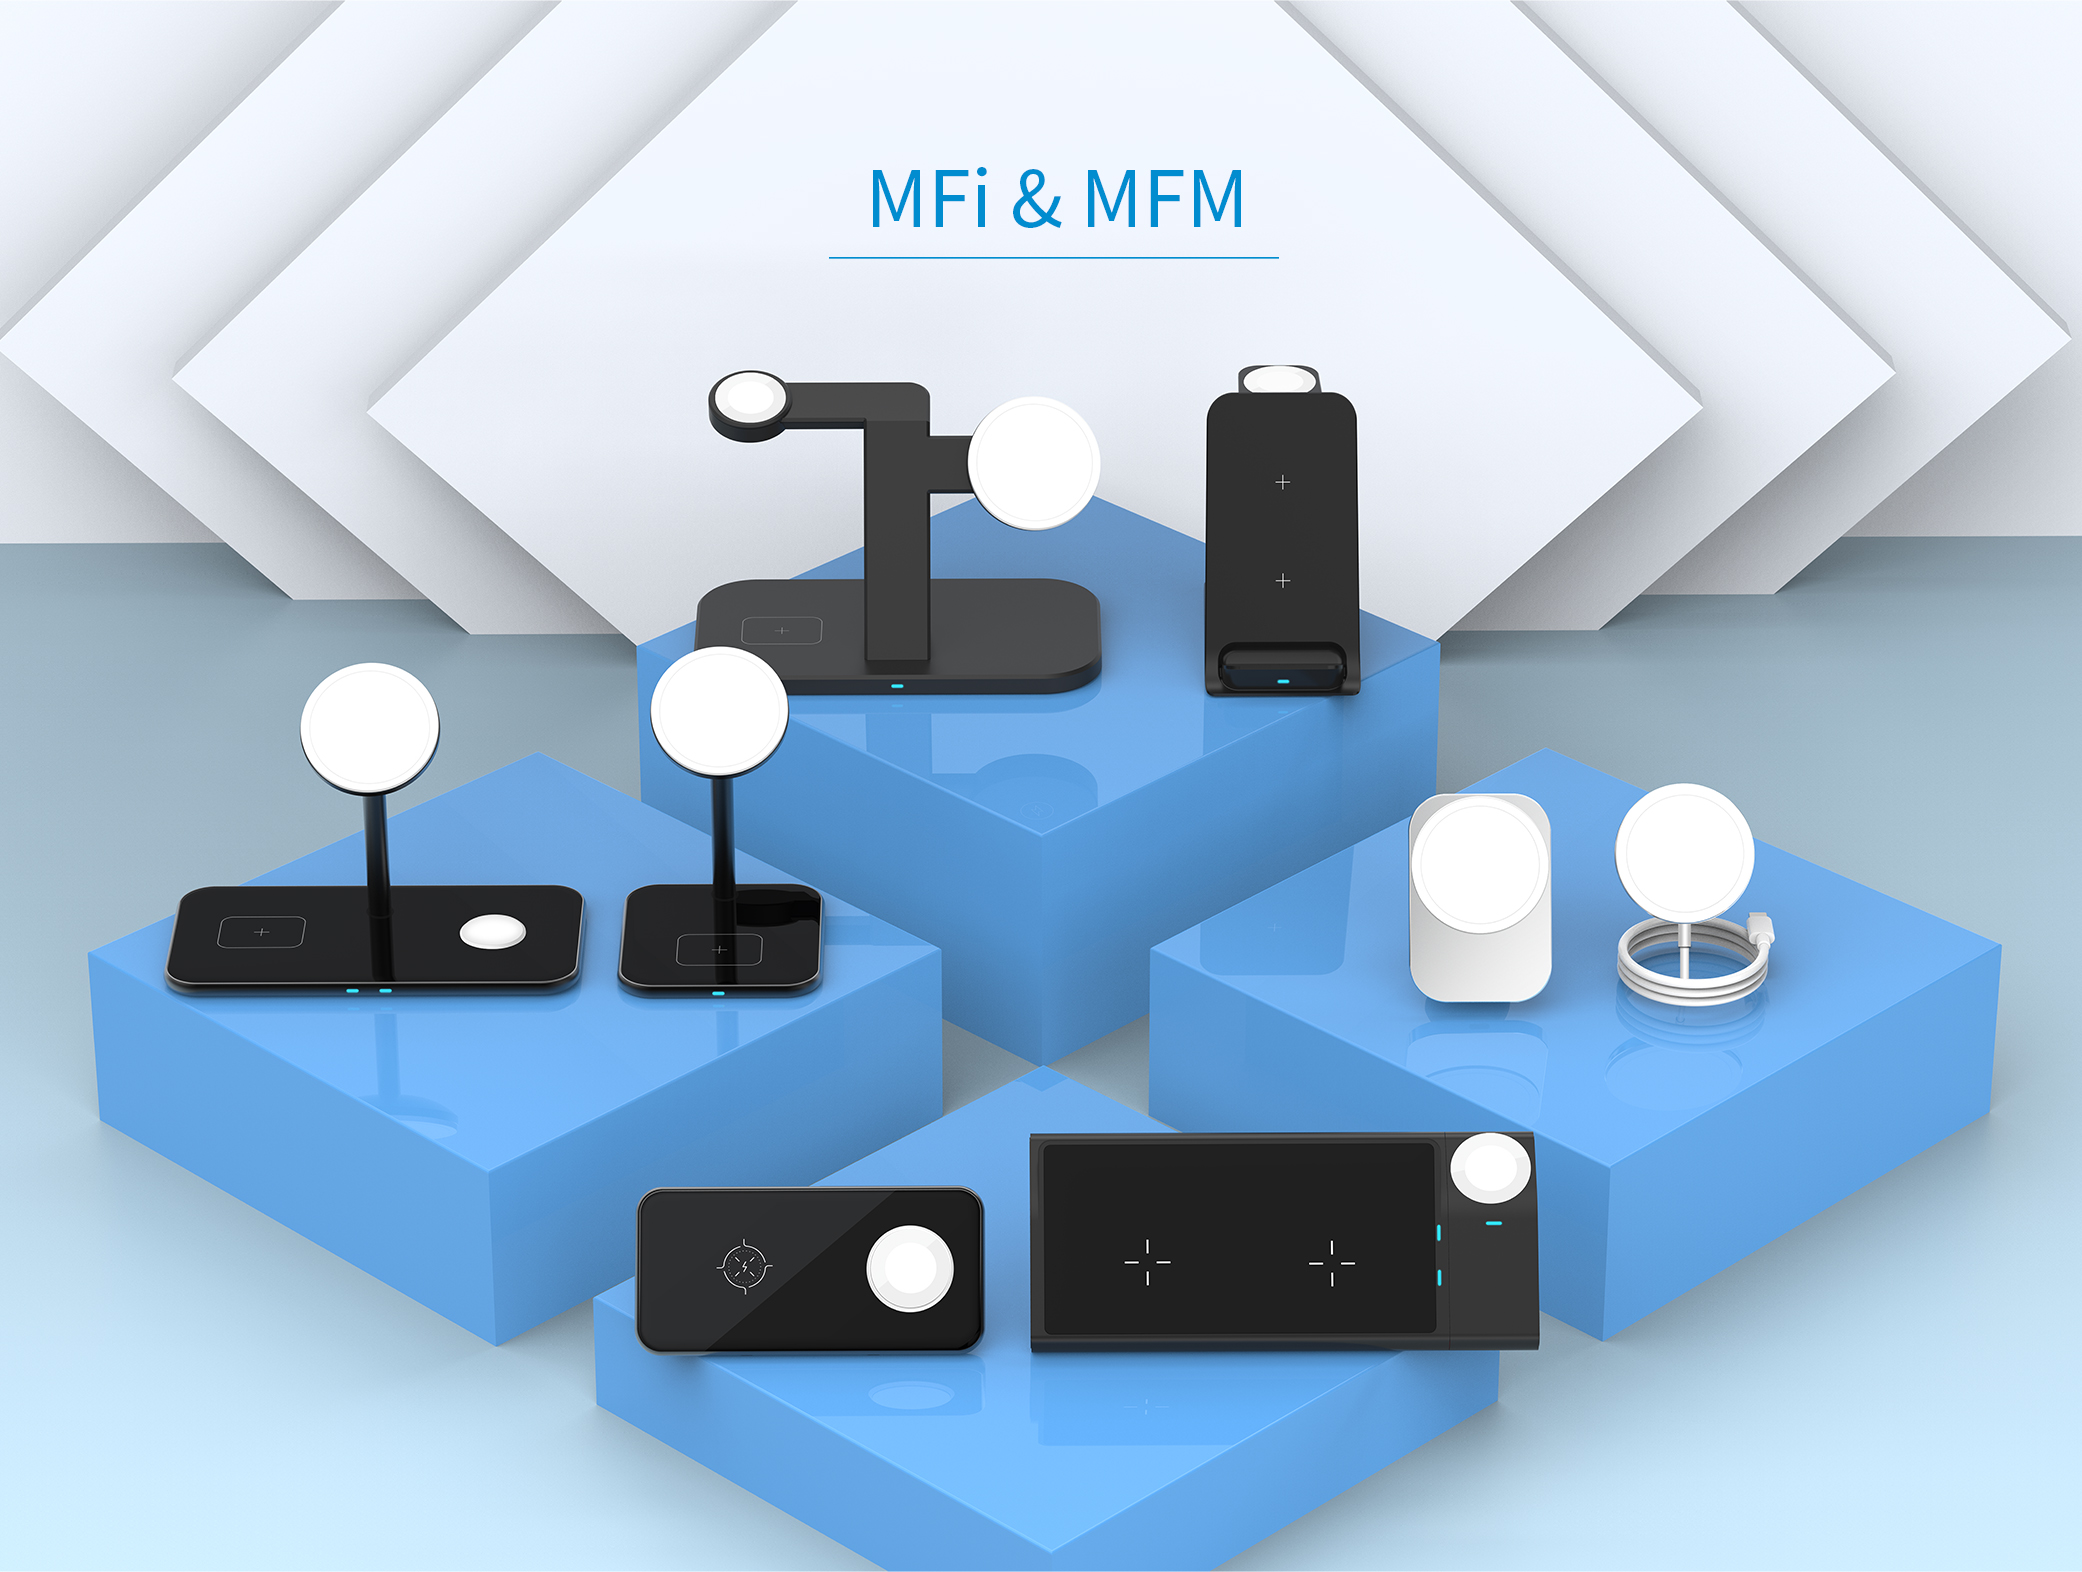 Cume sceglite un caricatore wireless MFi o un caricatore wireless MFM?